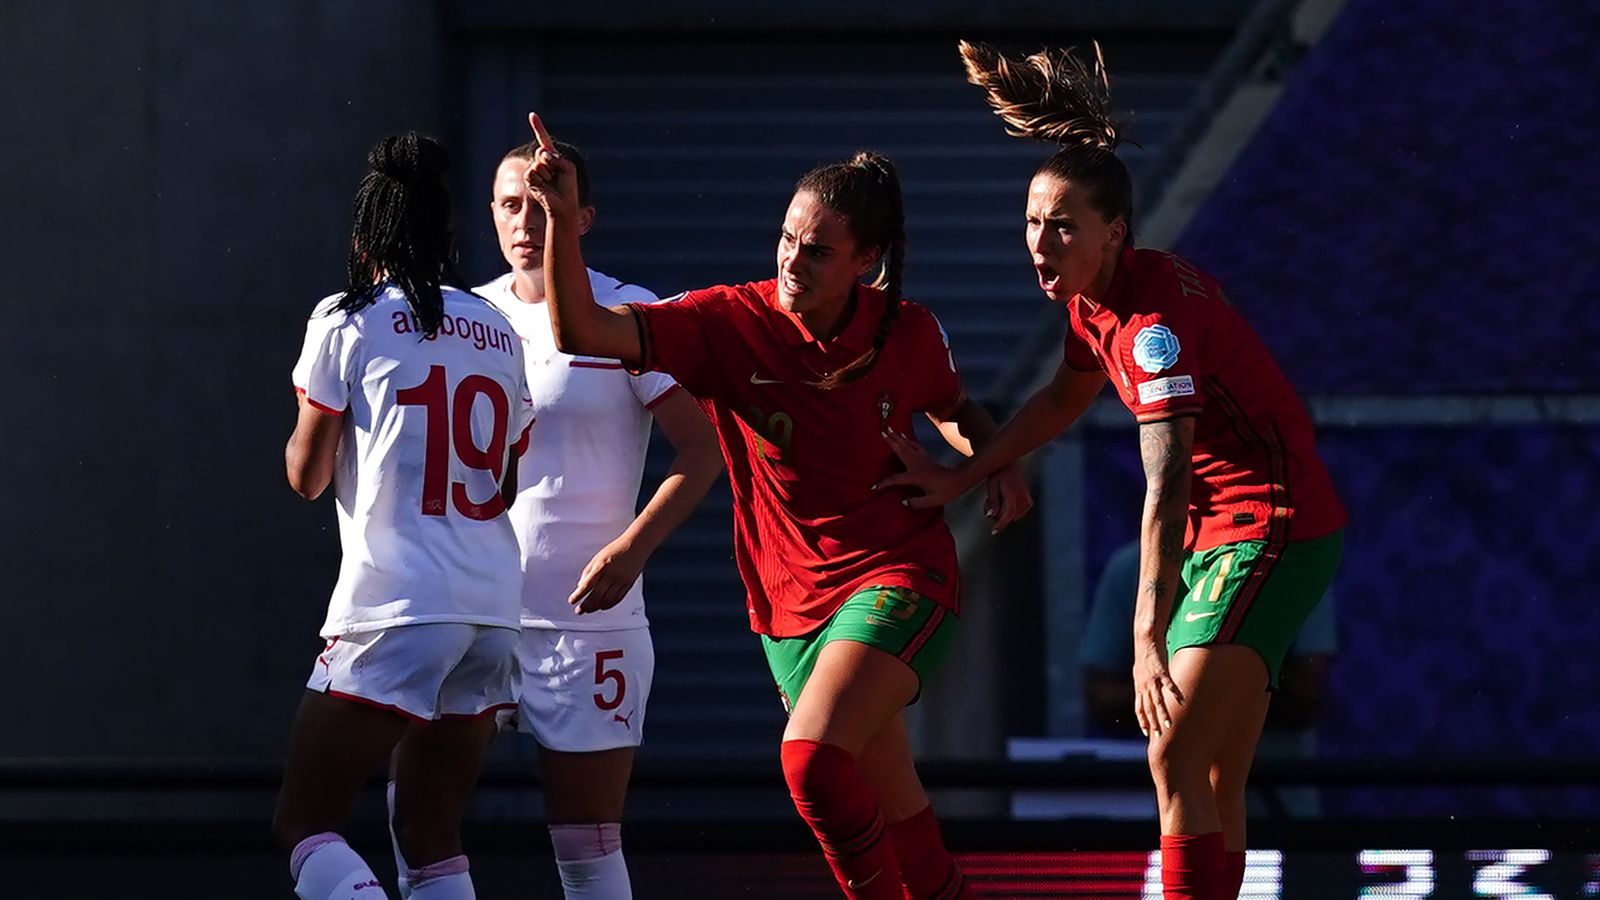 Portugal 2-2 Suíça: saque partilhado após inspirado retorno português |  notícias de futebol